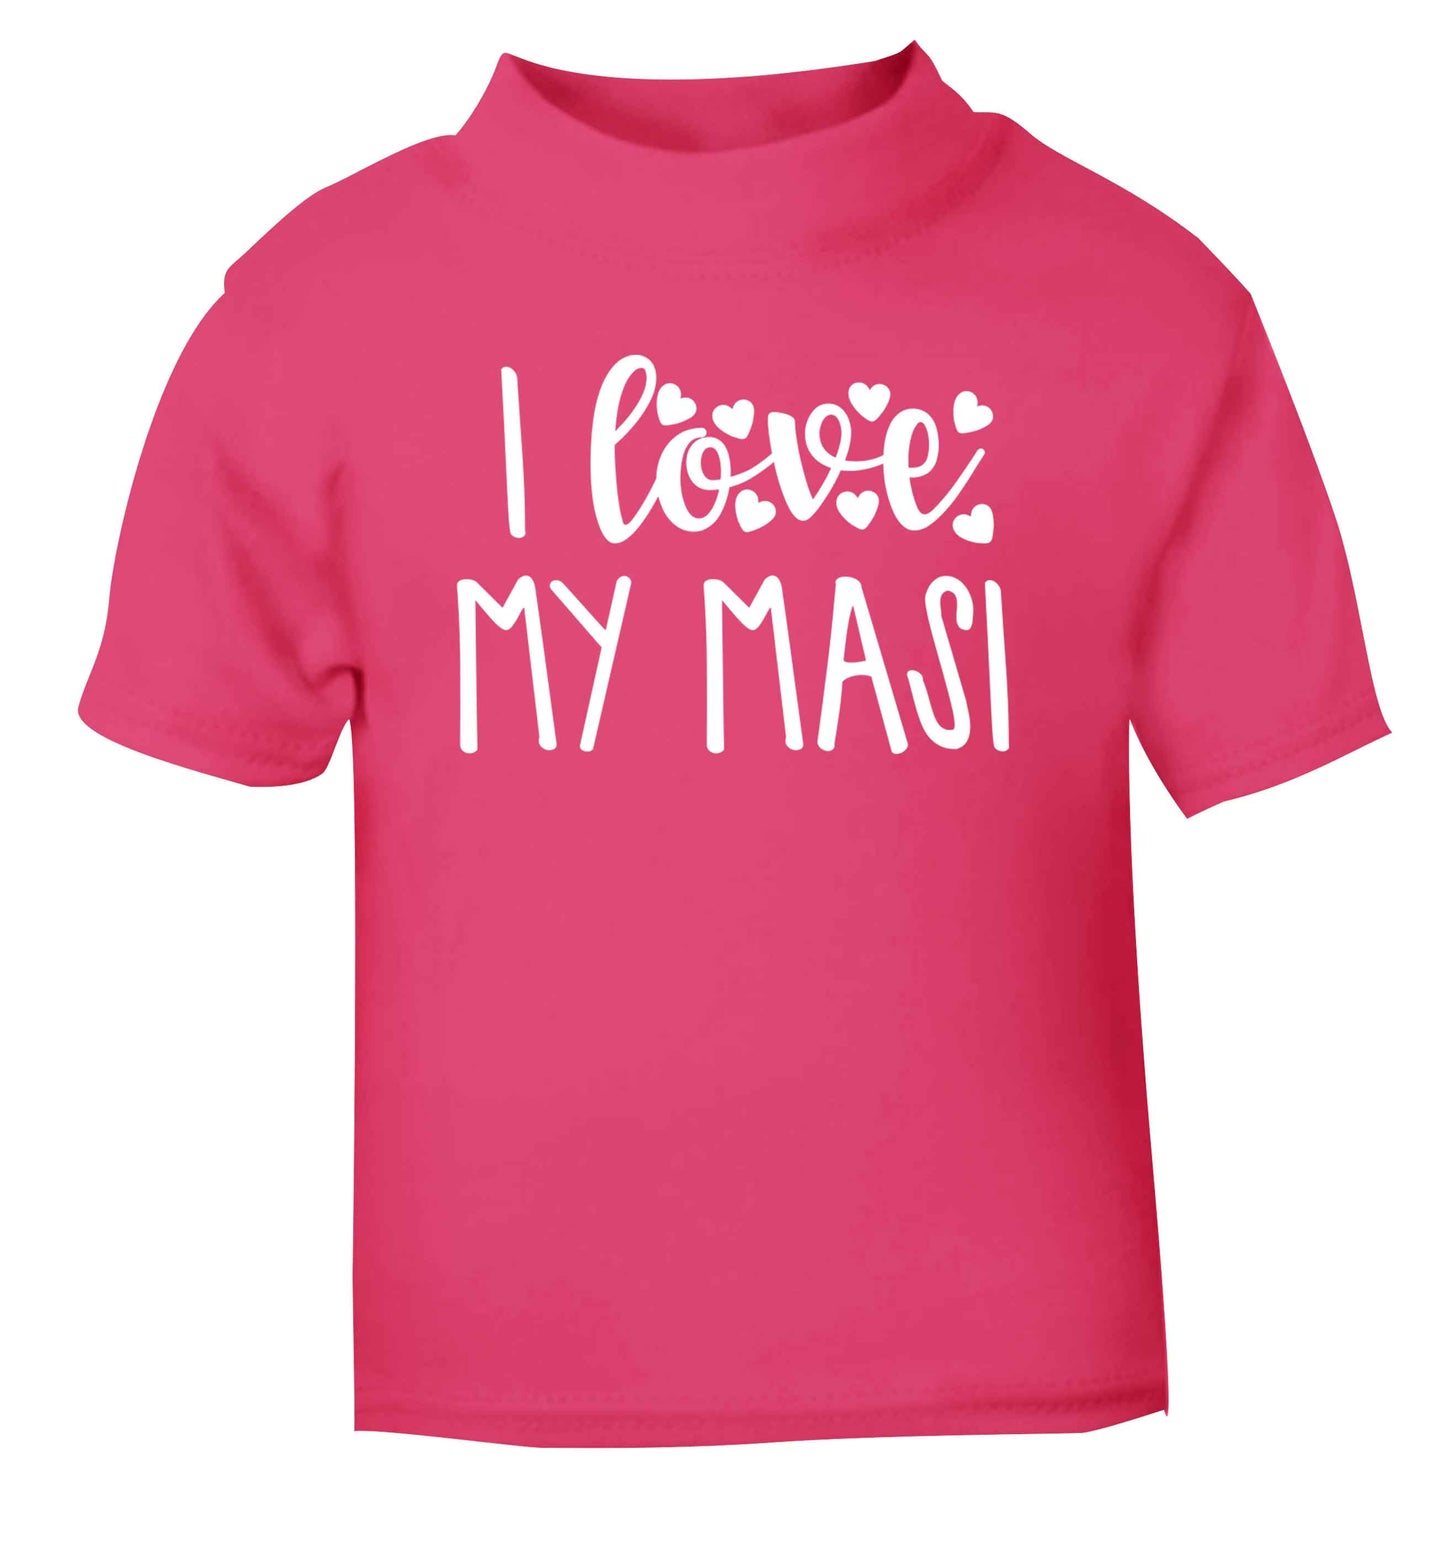 I love my masi pink Baby Toddler Tshirt 2 Years